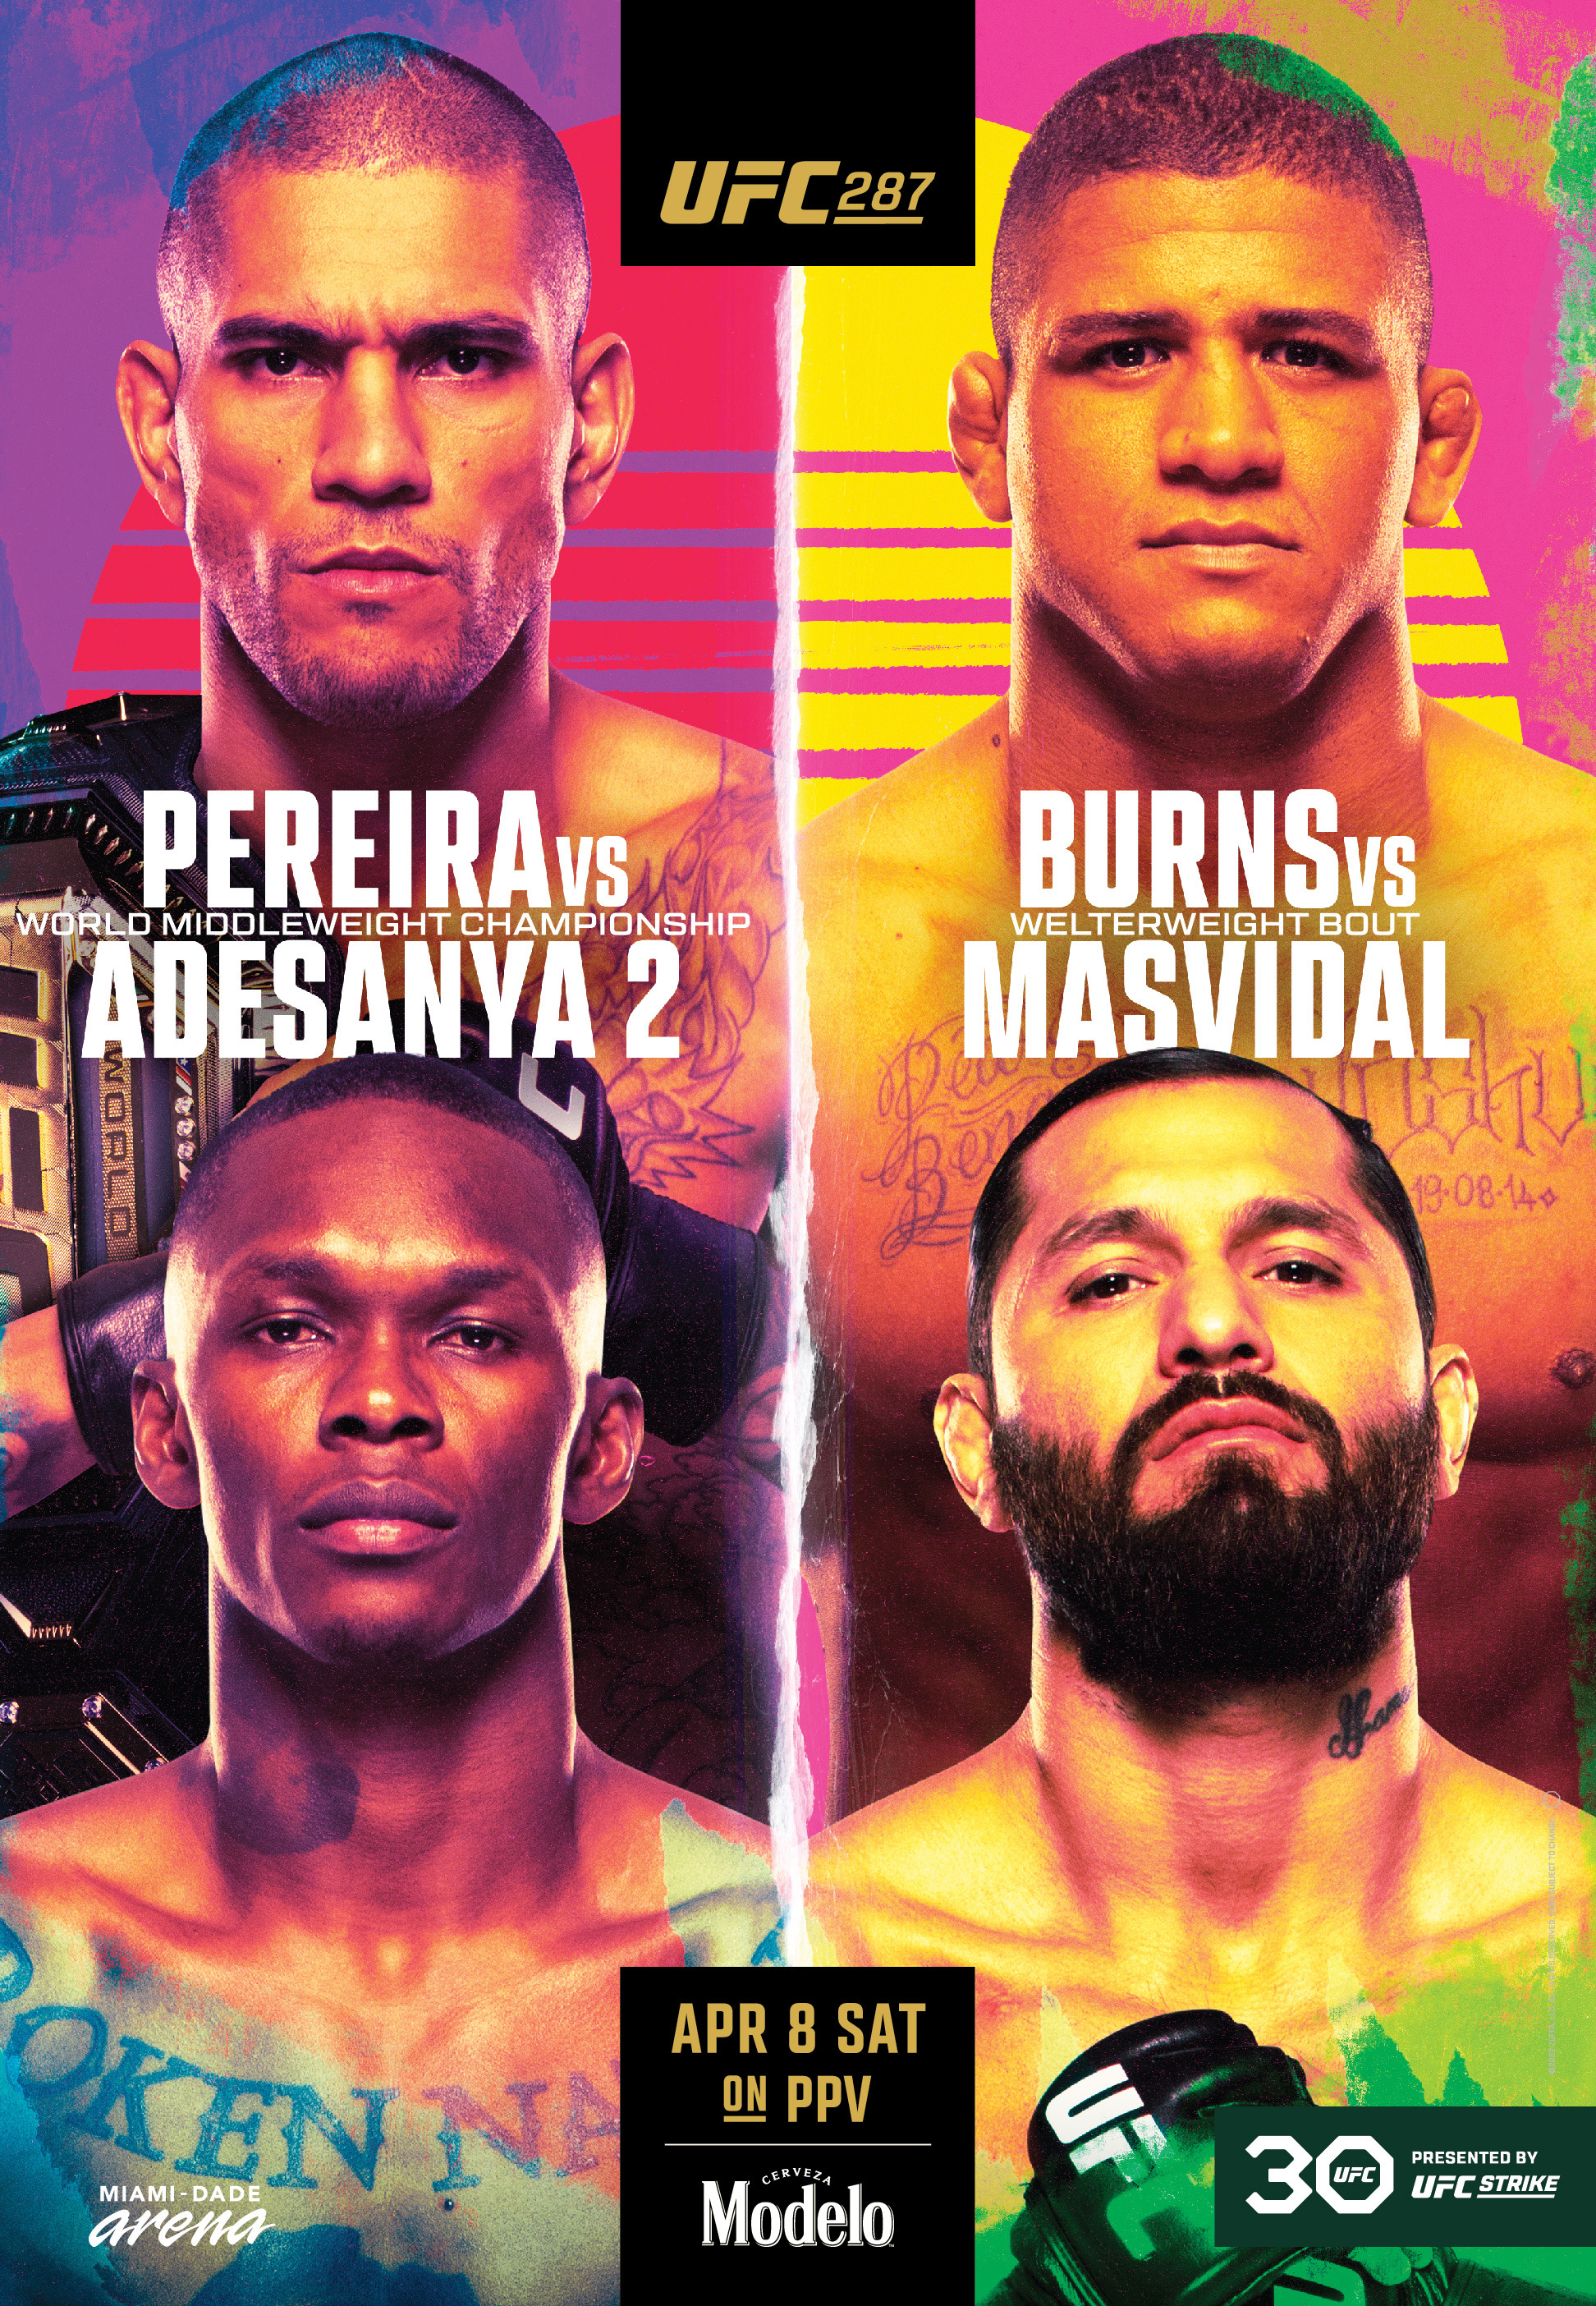 Mega Sized TV Poster Image for UFC 287 